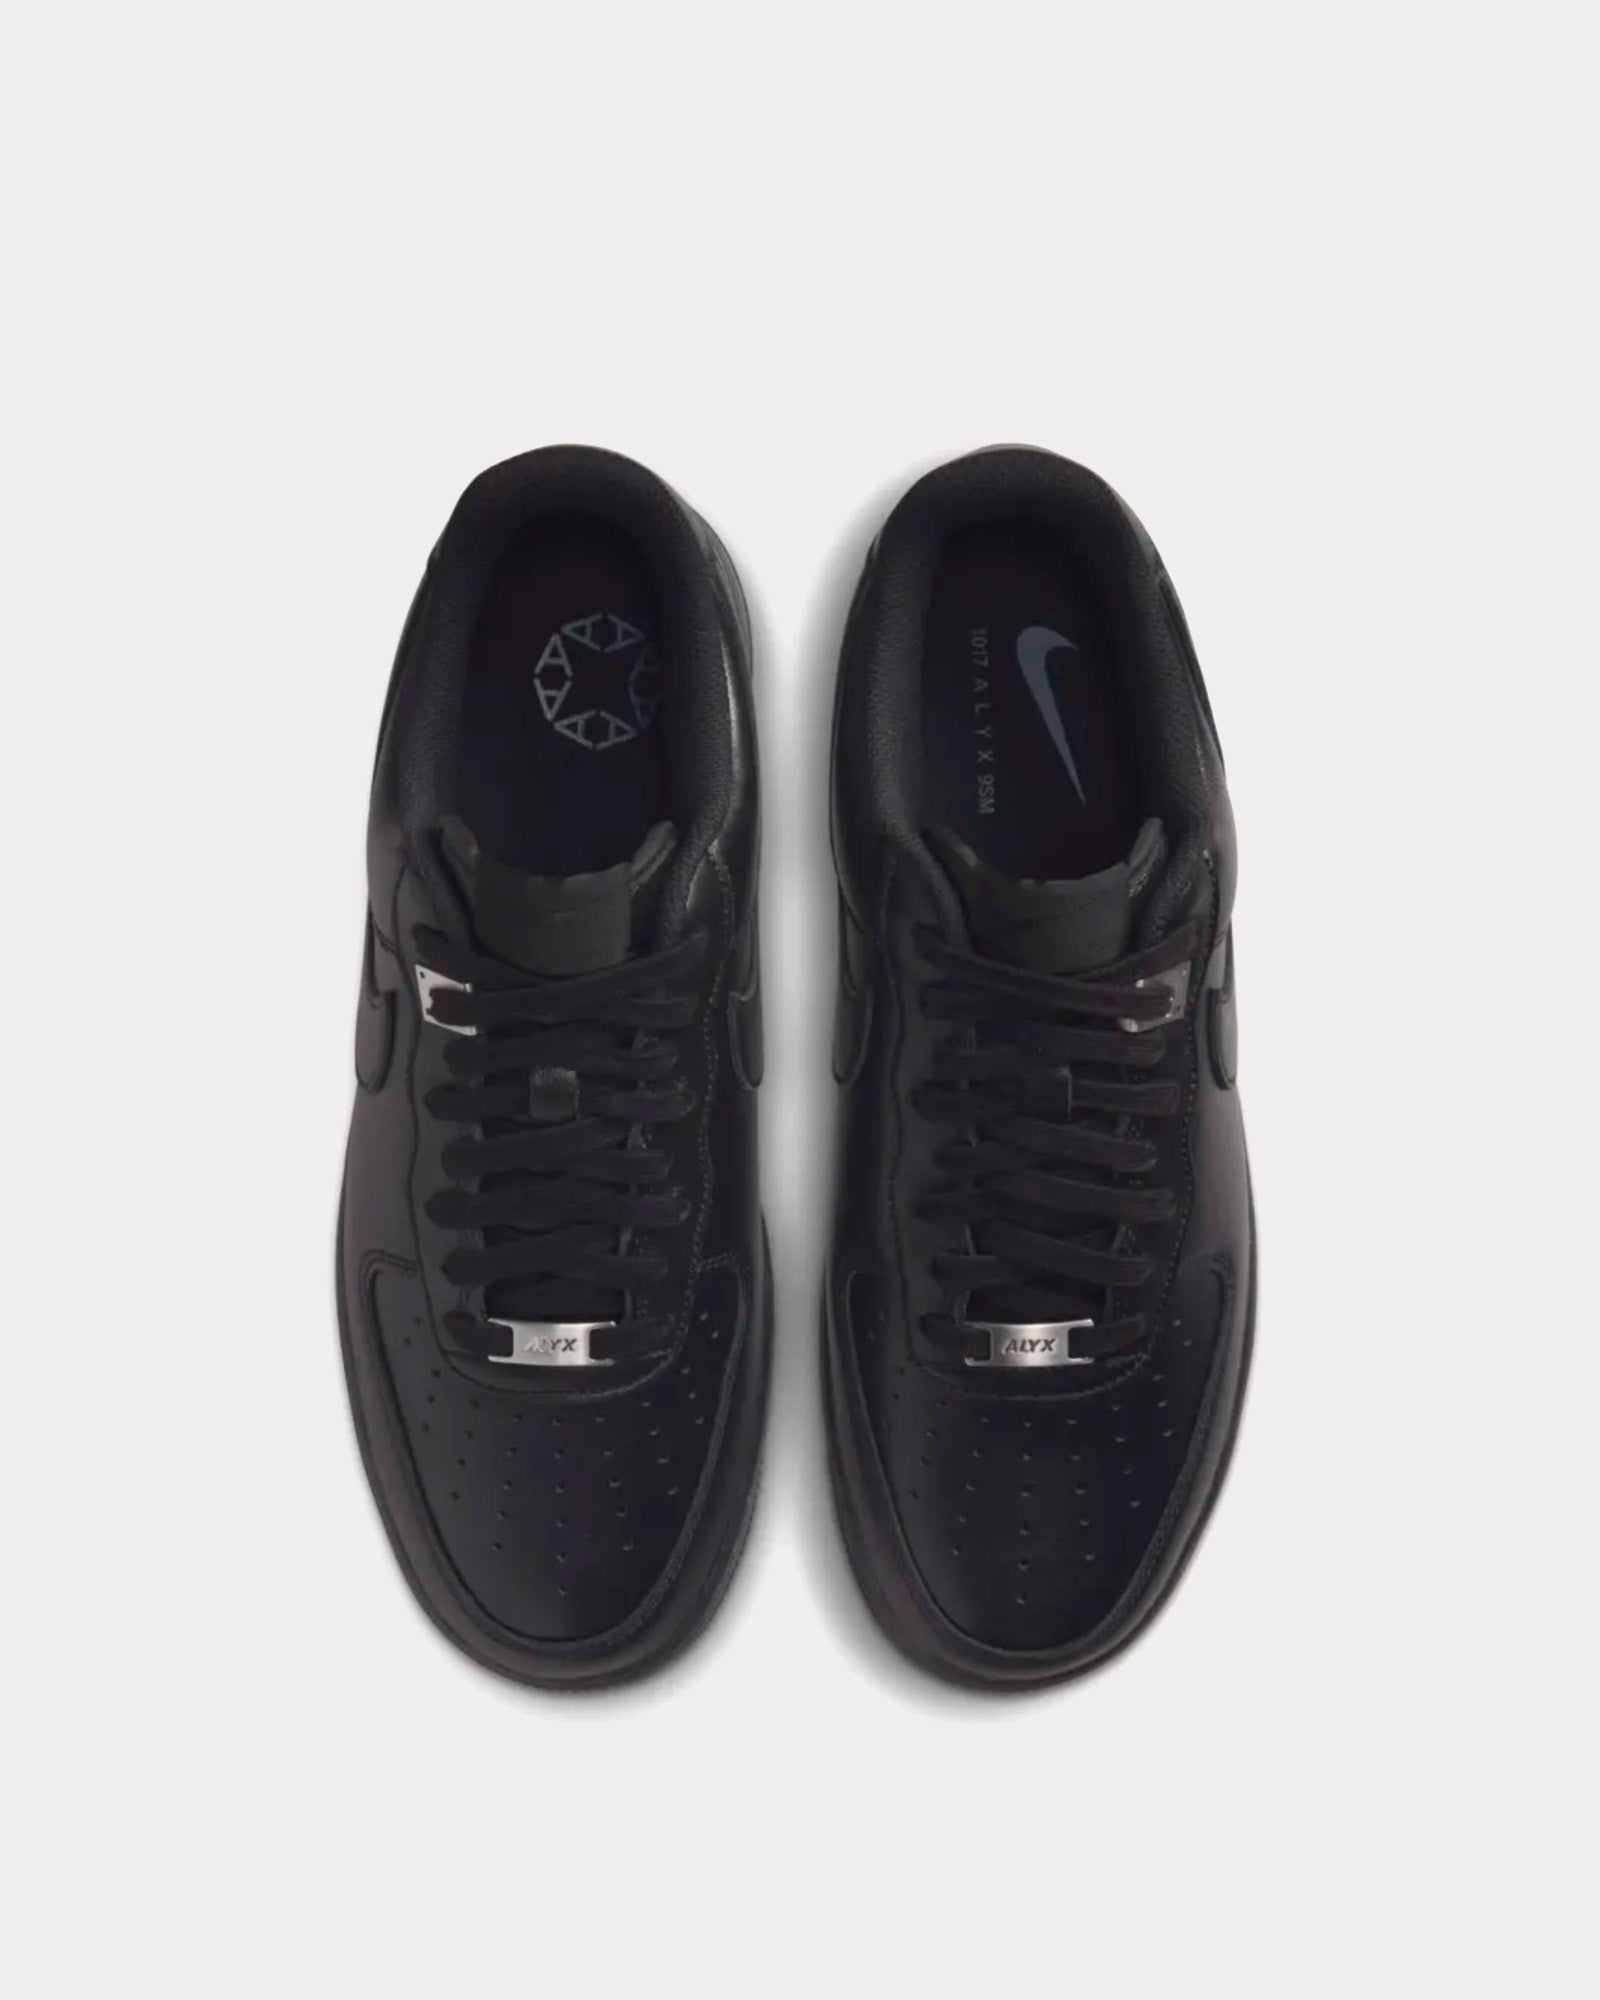 Nike x ALYX - AF-1 Low Black Low Top Sneakers